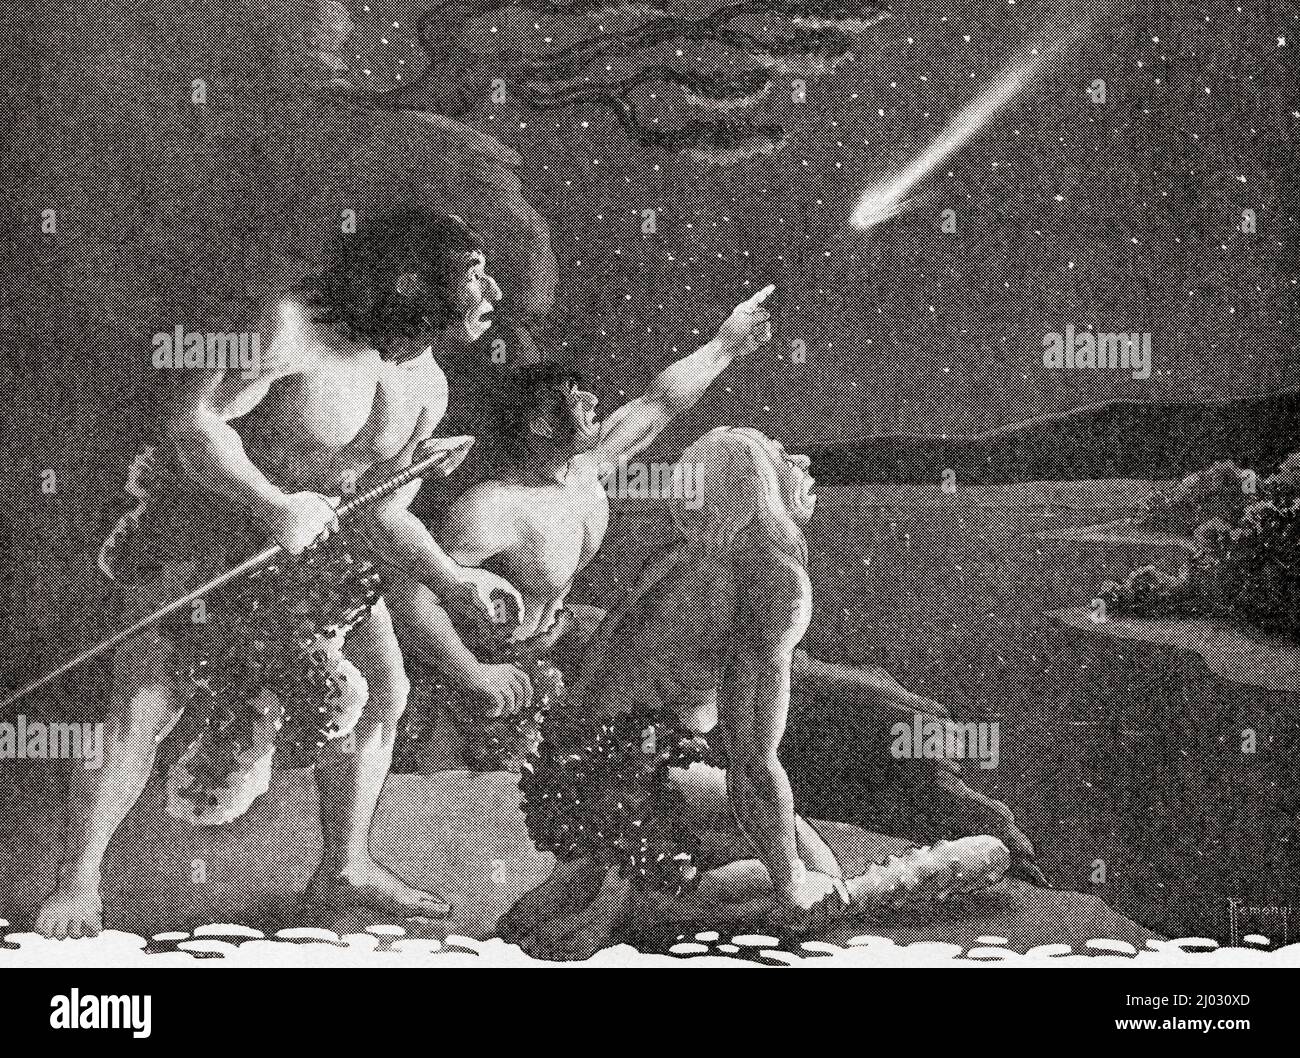 Primi cavemen che guardano le stelle. Dal Paese delle meraviglie della conoscenza, pubblicato c.1930 Foto Stock